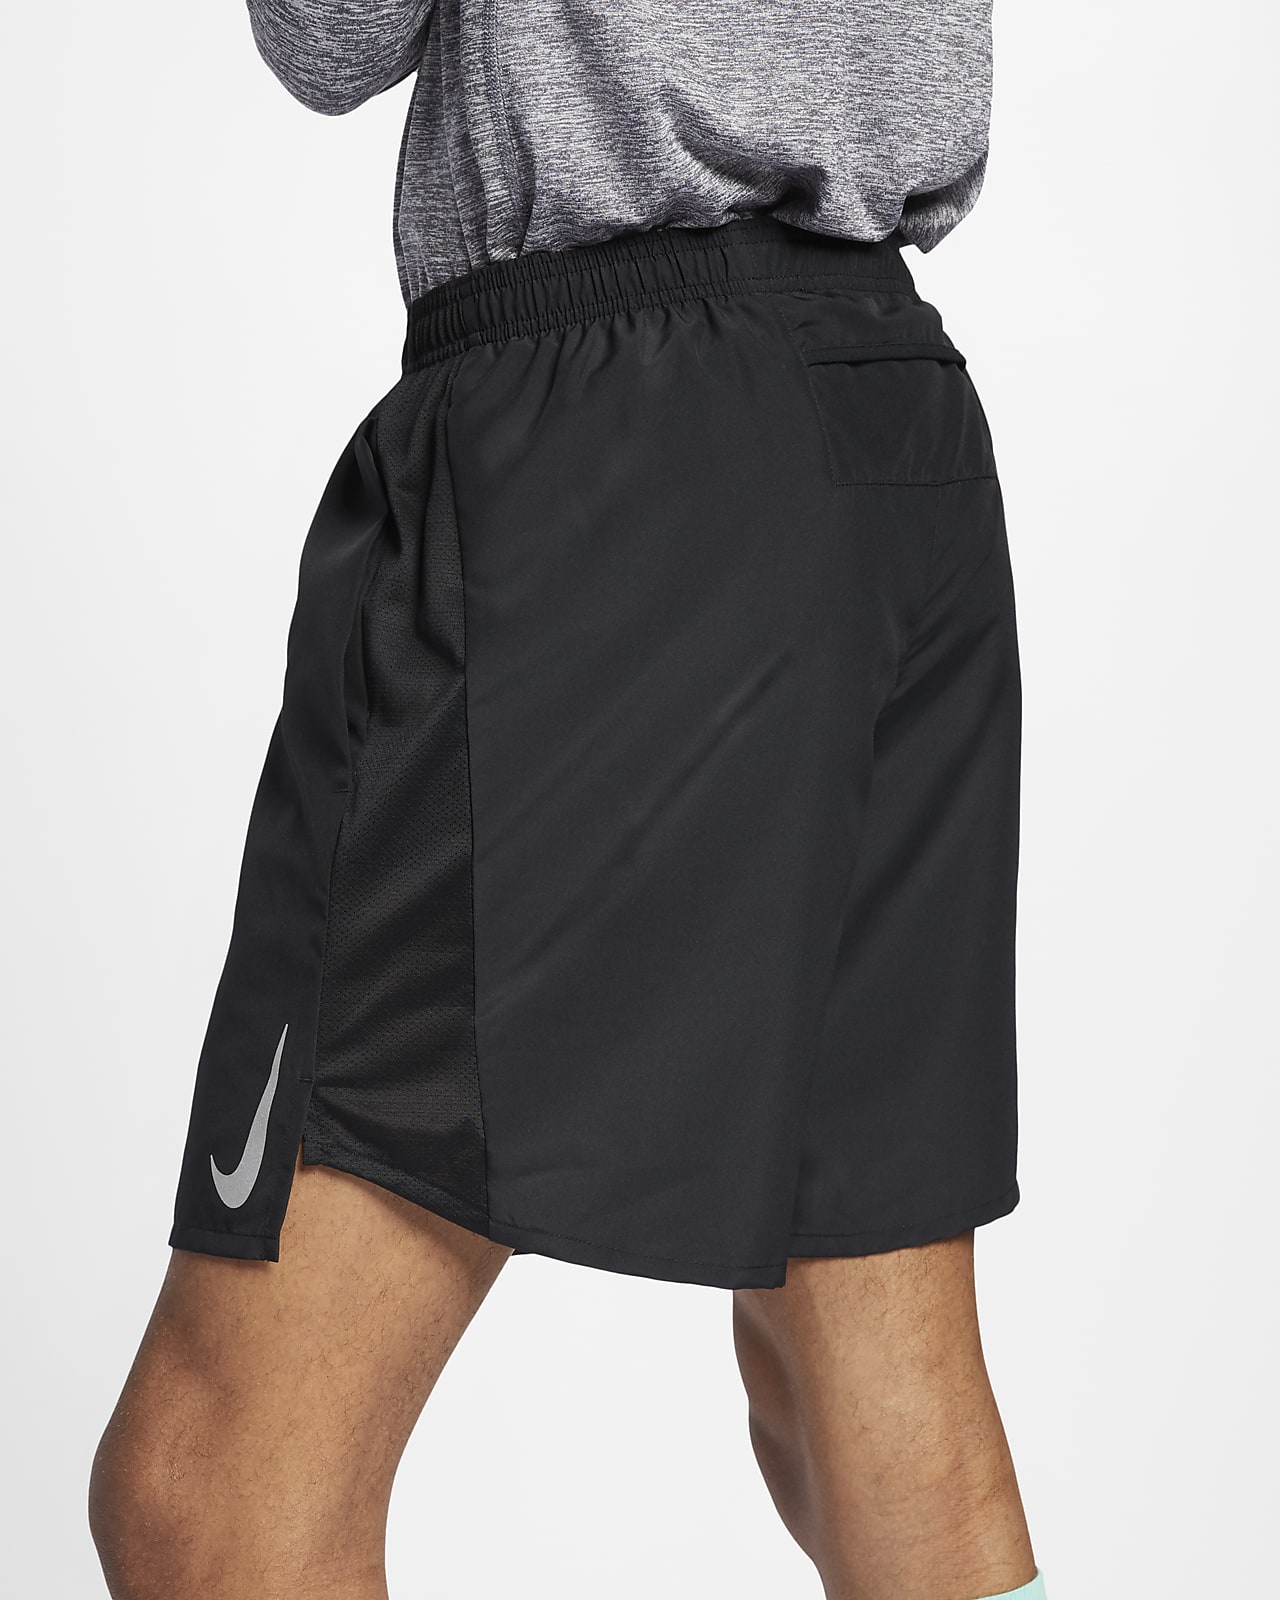 men's 7 lined running shorts